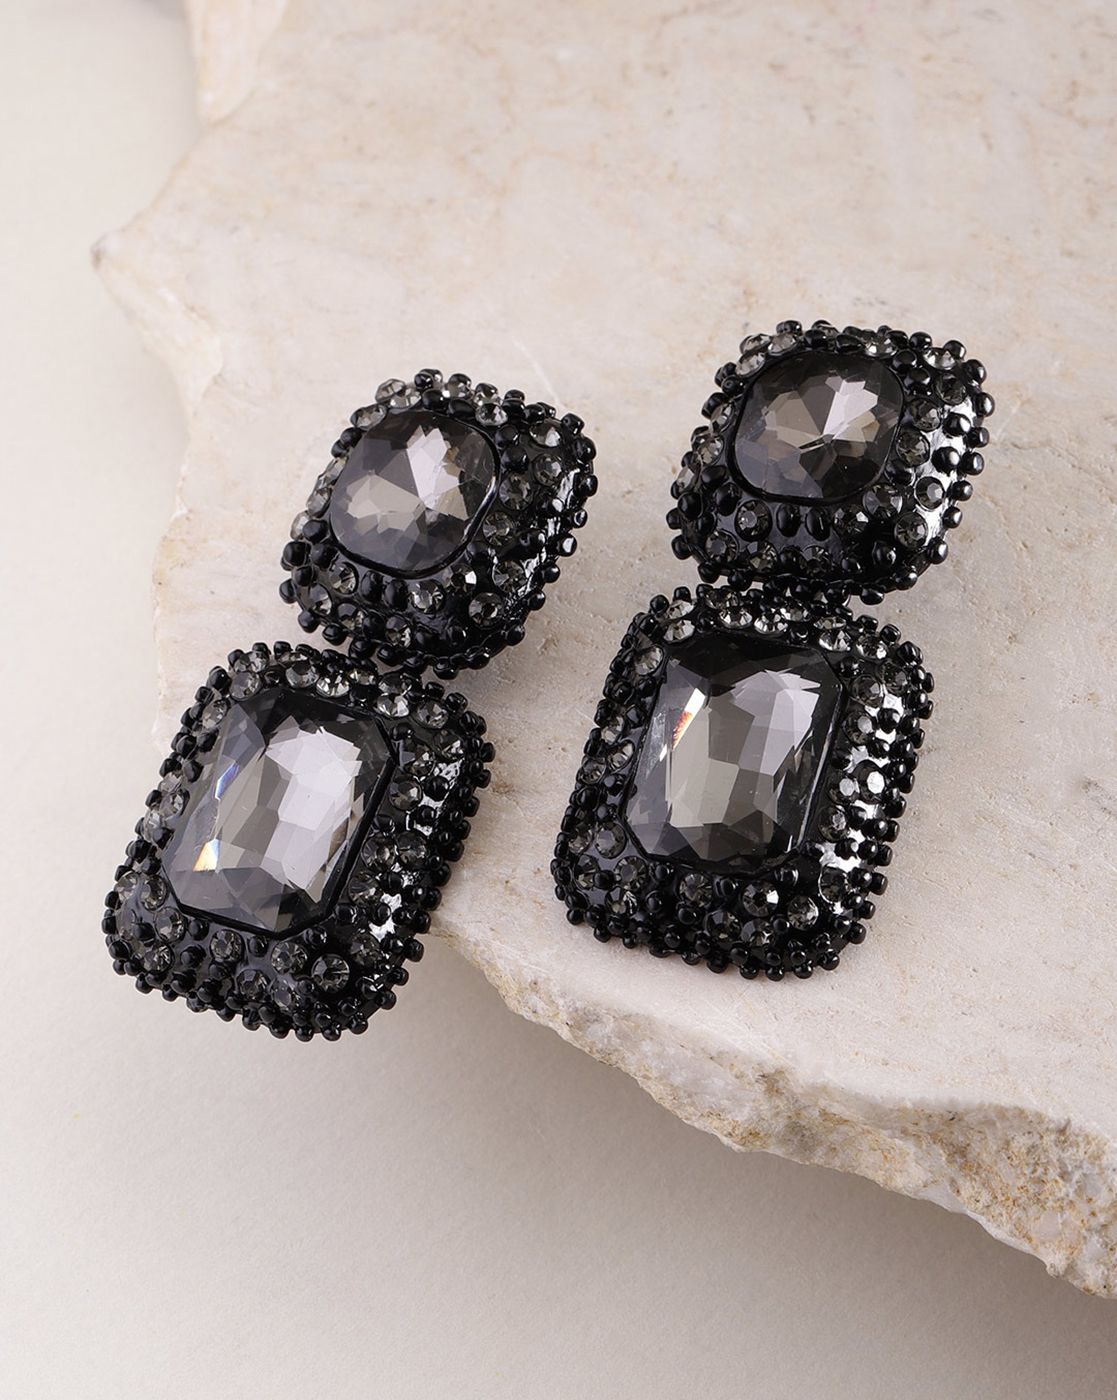 Aggregate 259+ black crystal earrings best